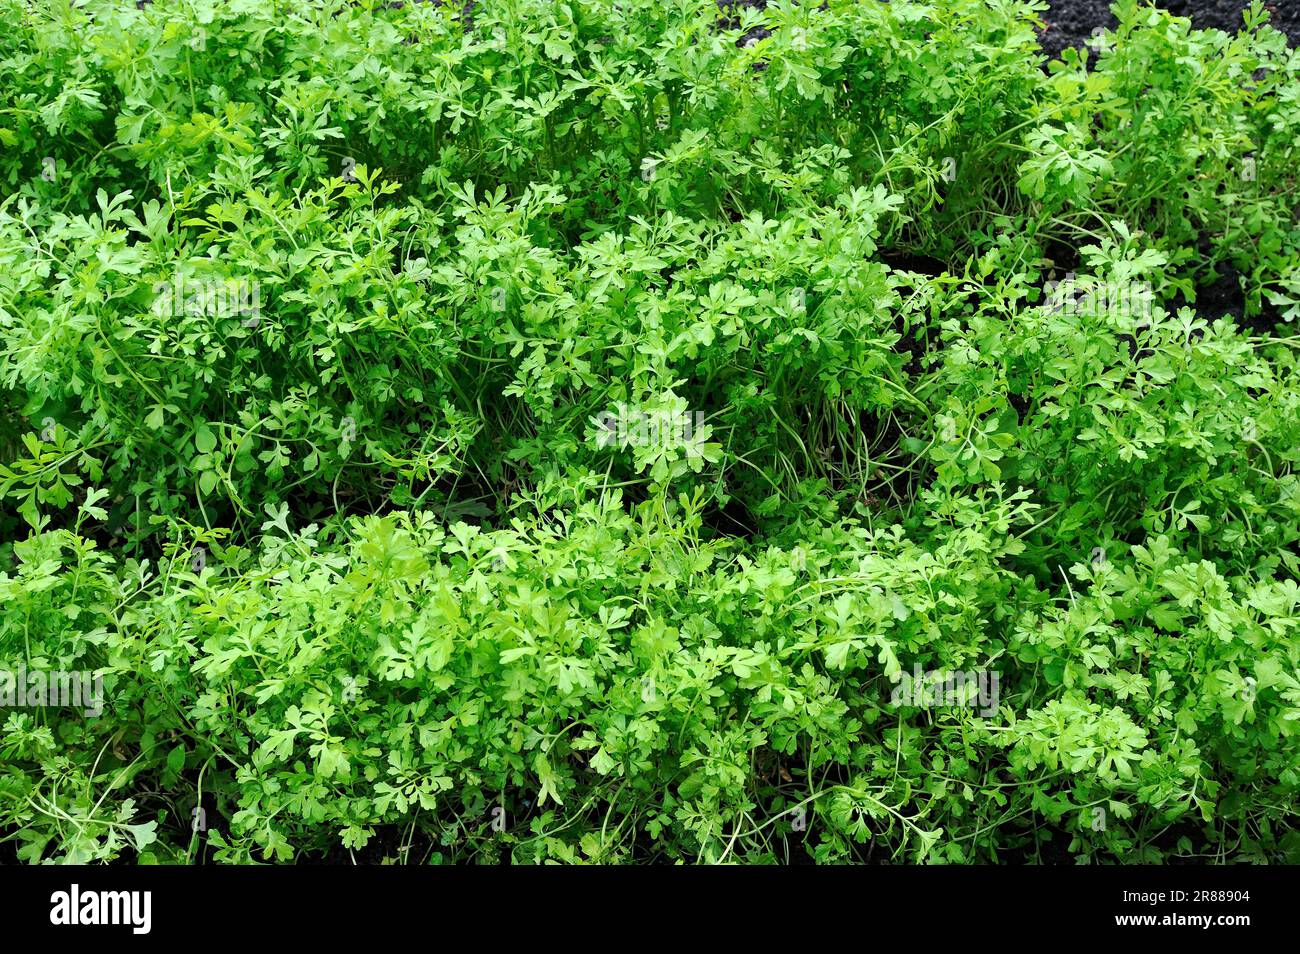 Cress, Curled Peppercress or Garden Cress (Lepidium sativum